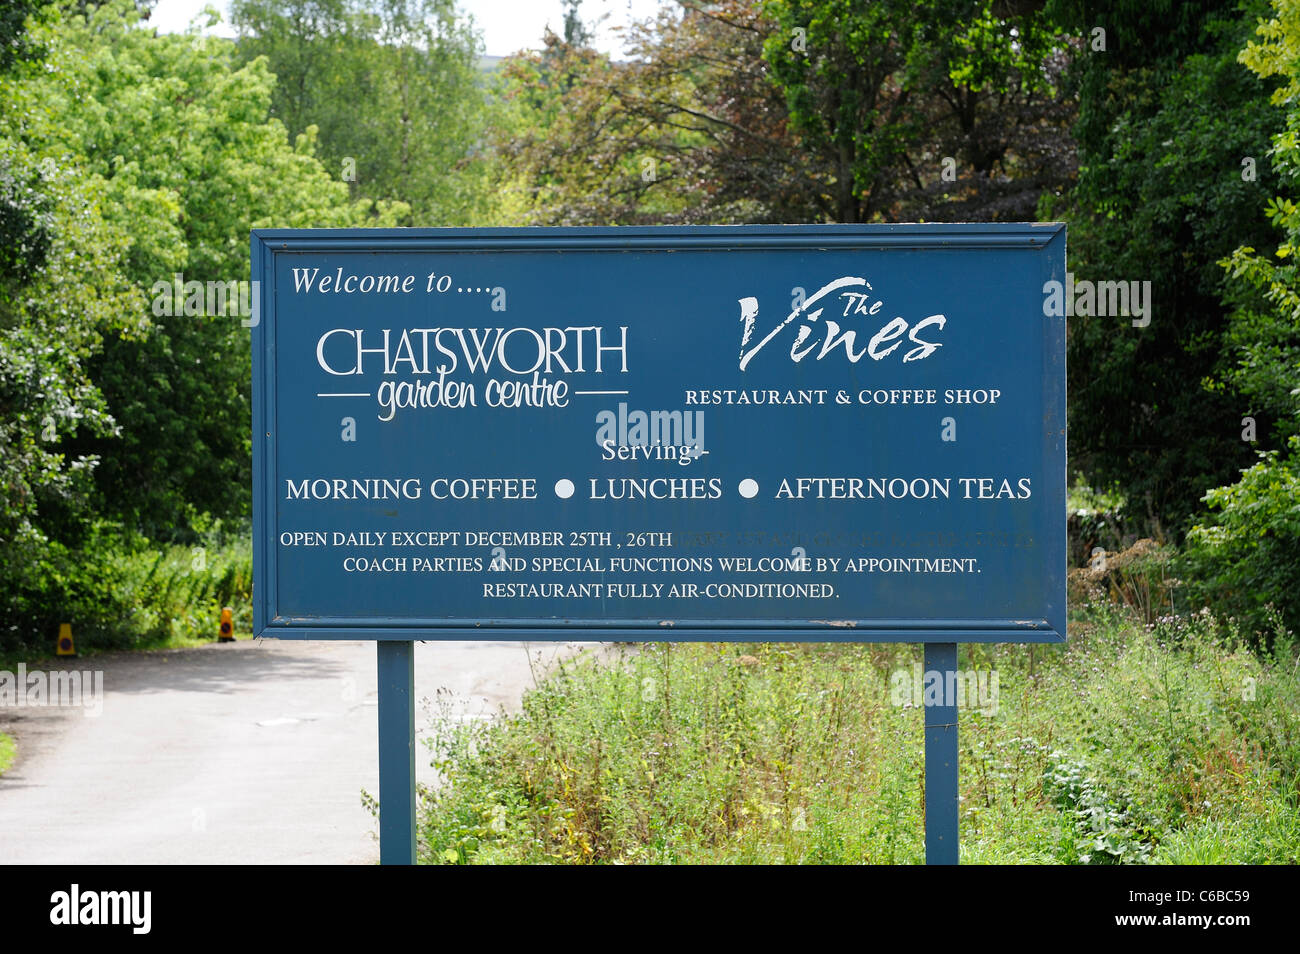 Chatsworth Gartencenter Zeichen und die Reben-Restaurant und Café Derbyshire England uk Stockfoto